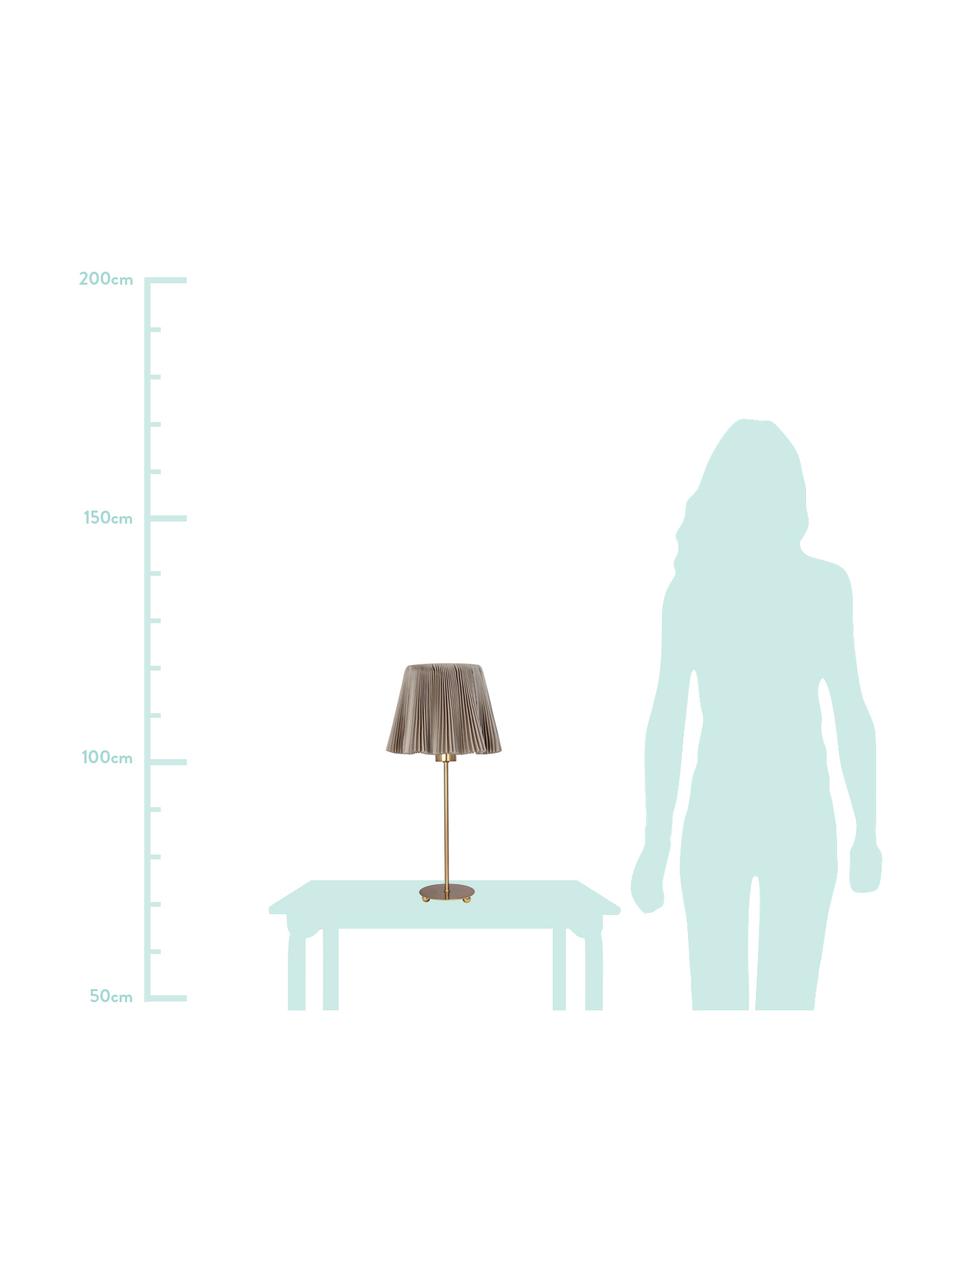 Lampa stołowa z plisowanej tkaniny  Edith, Bawełna, metal, Brązowy, odcienie mosiądzu, Ø 20 x W 50 cm